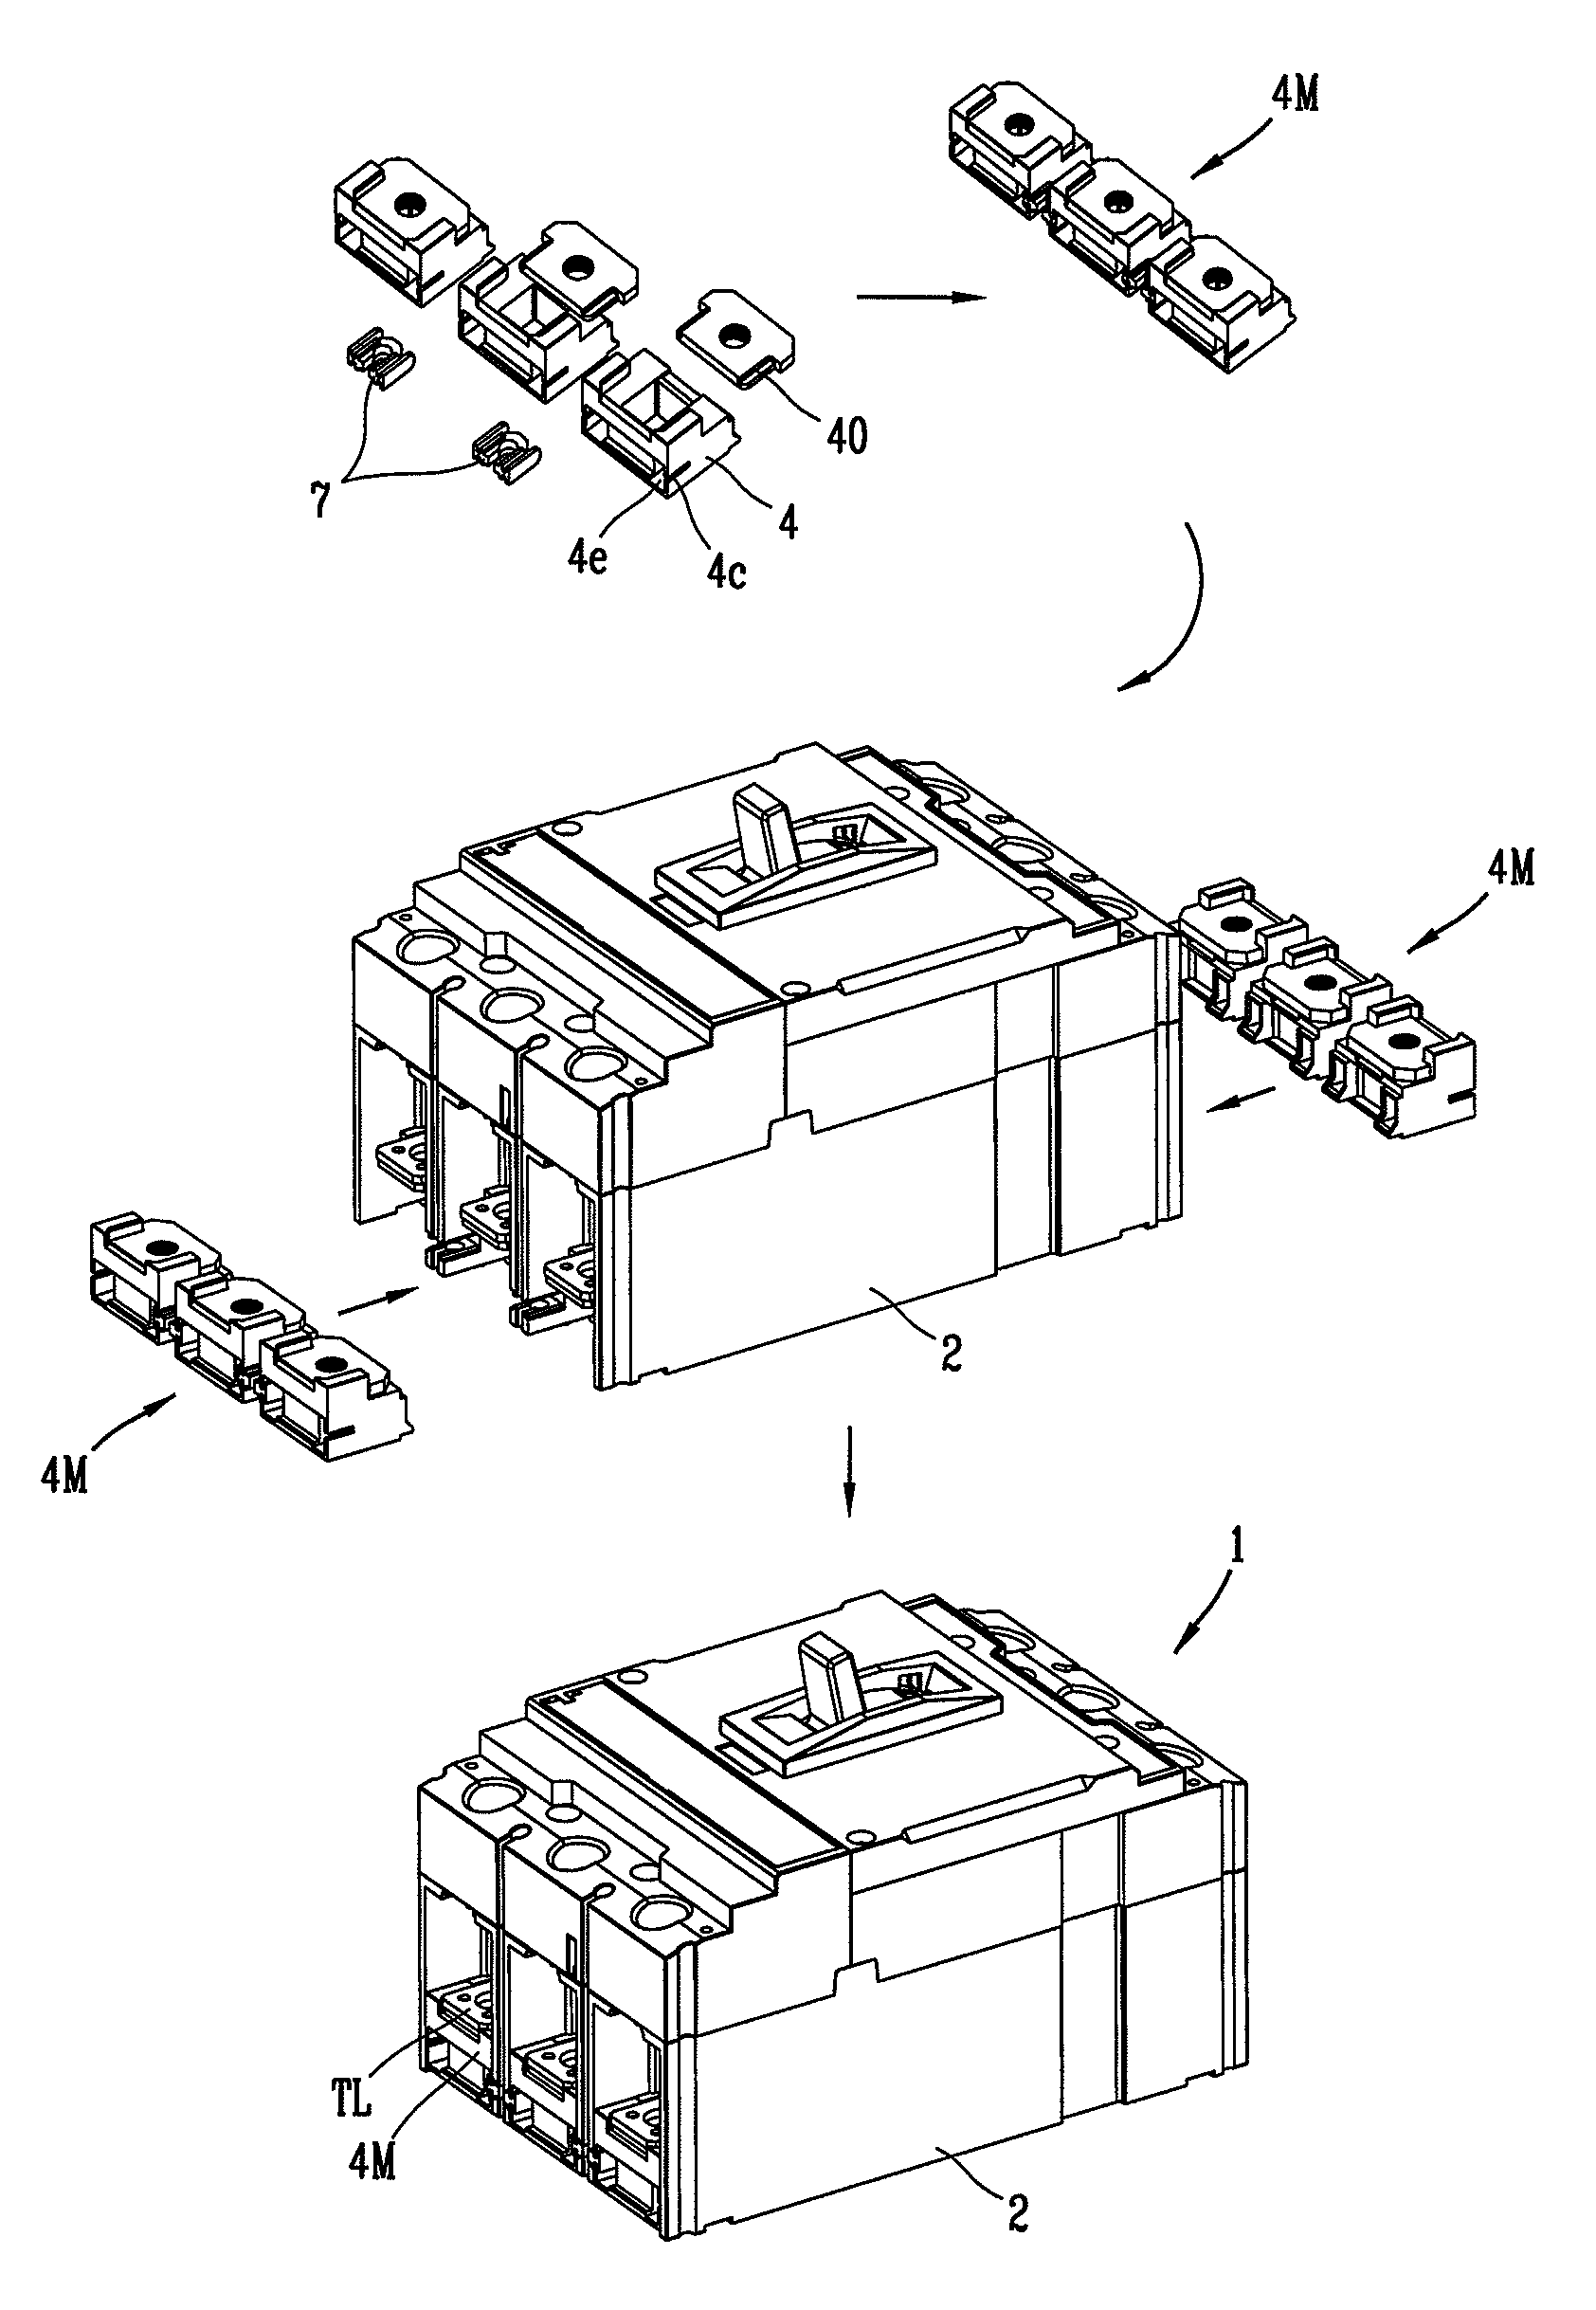 Modular terminal for molded case circuit breaker and molded case circuit breaker having the same